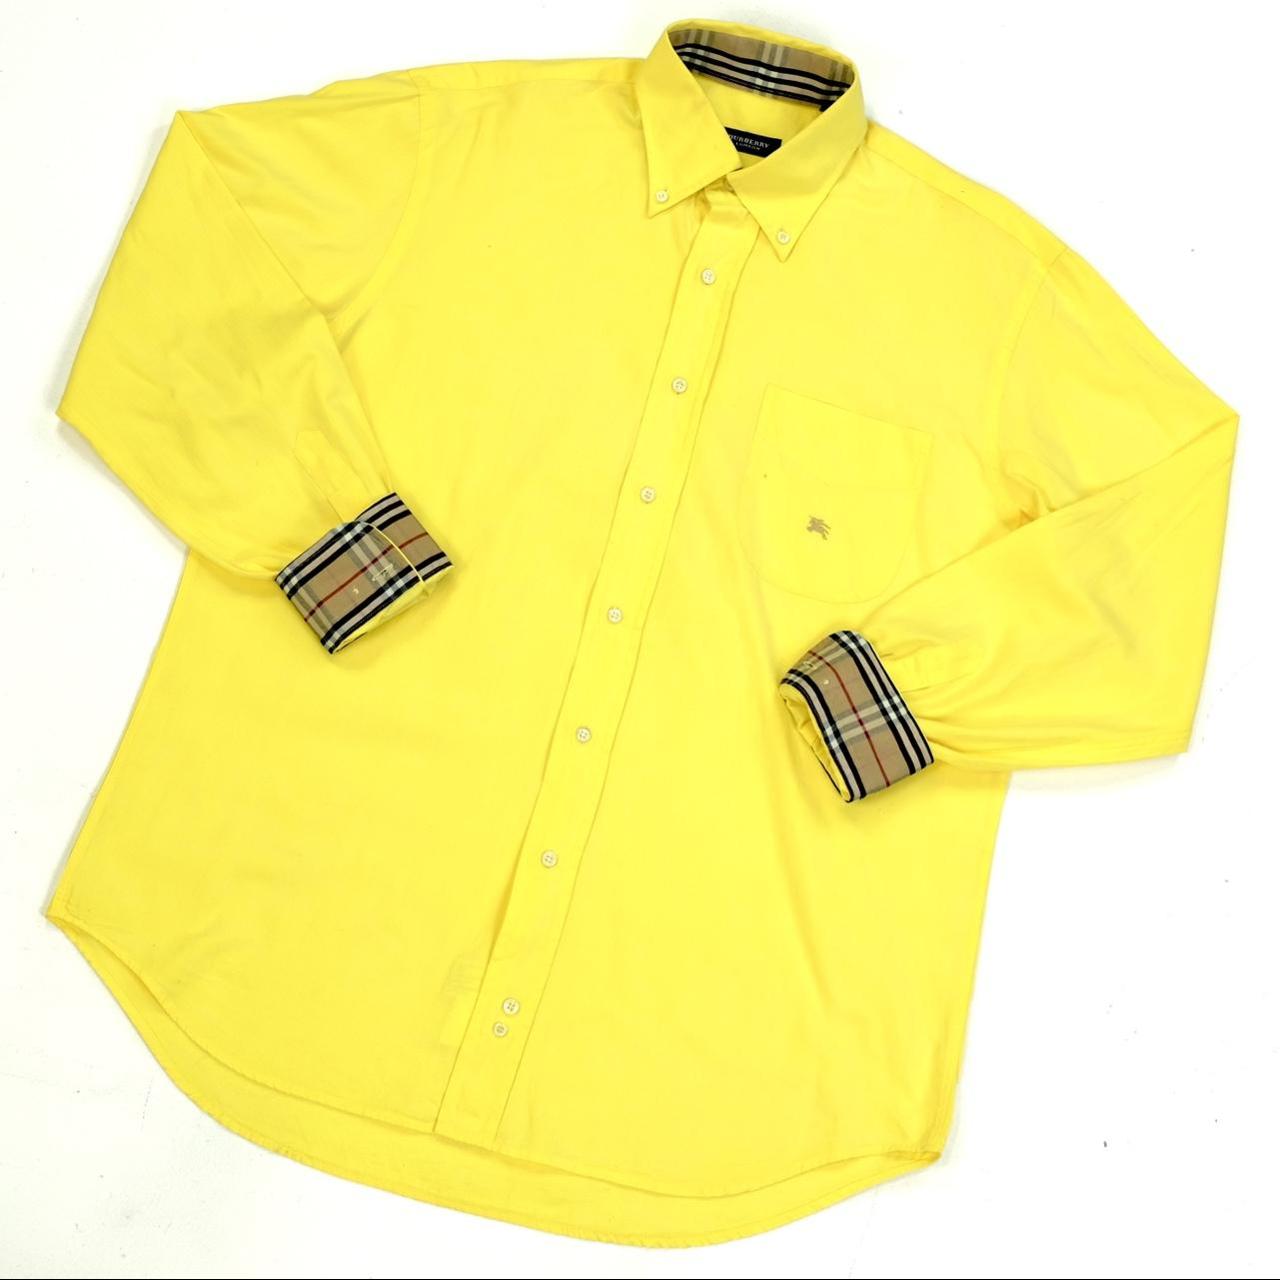 Burberry Men's Yellow Shirt | Depop